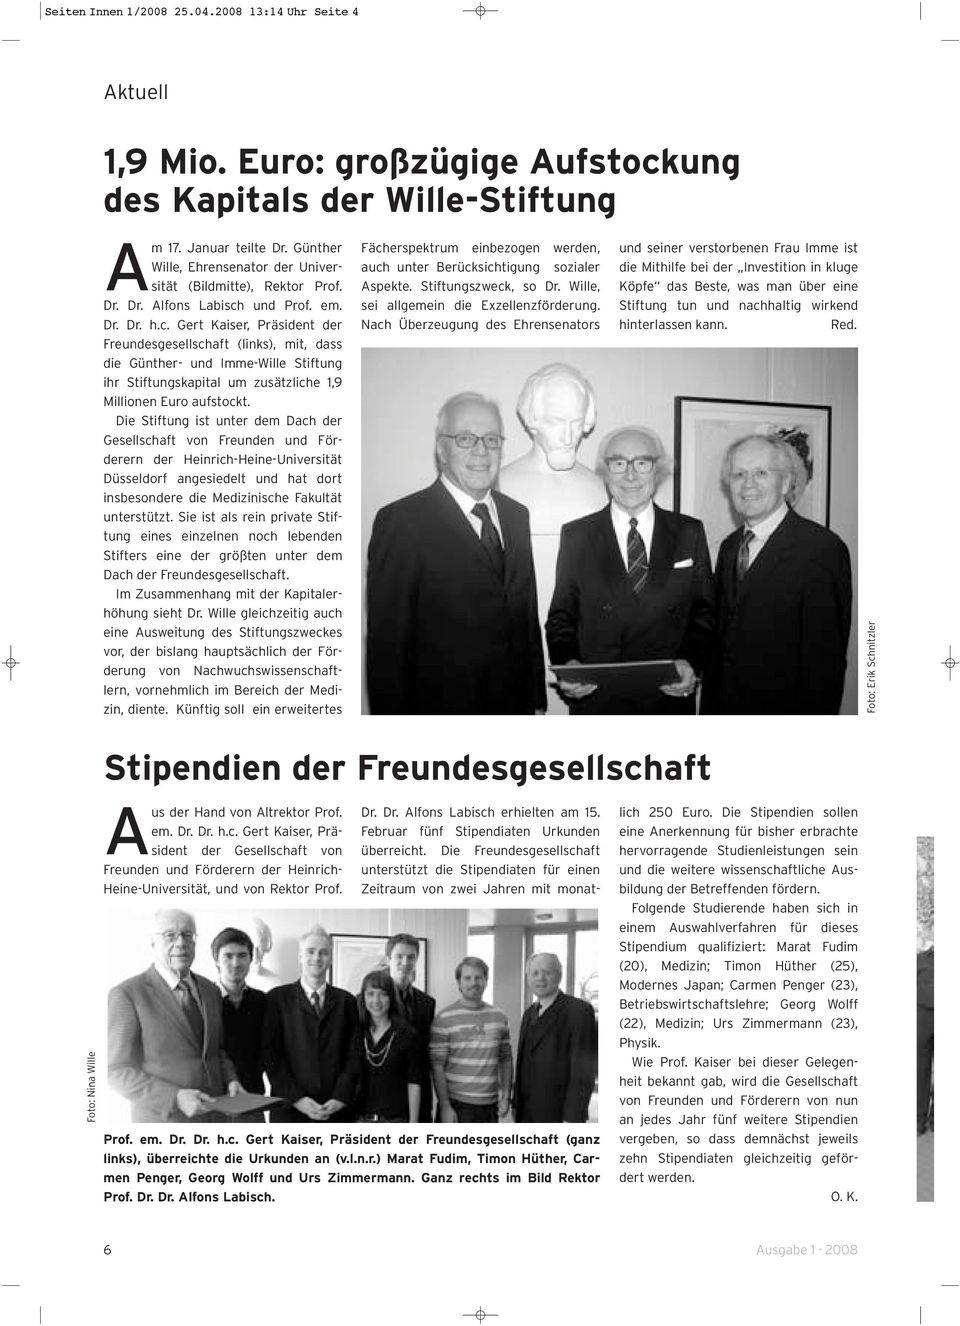 und Prof. em. Dr. Dr. h.c. Gert Kaiser, Präsident der Freundesgesellschaft (links), mit, dass die Günther- und Imme-Wille Stiftung ihr Stiftungskapital um zusätzliche 1,9 Millionen Euro aufstockt.